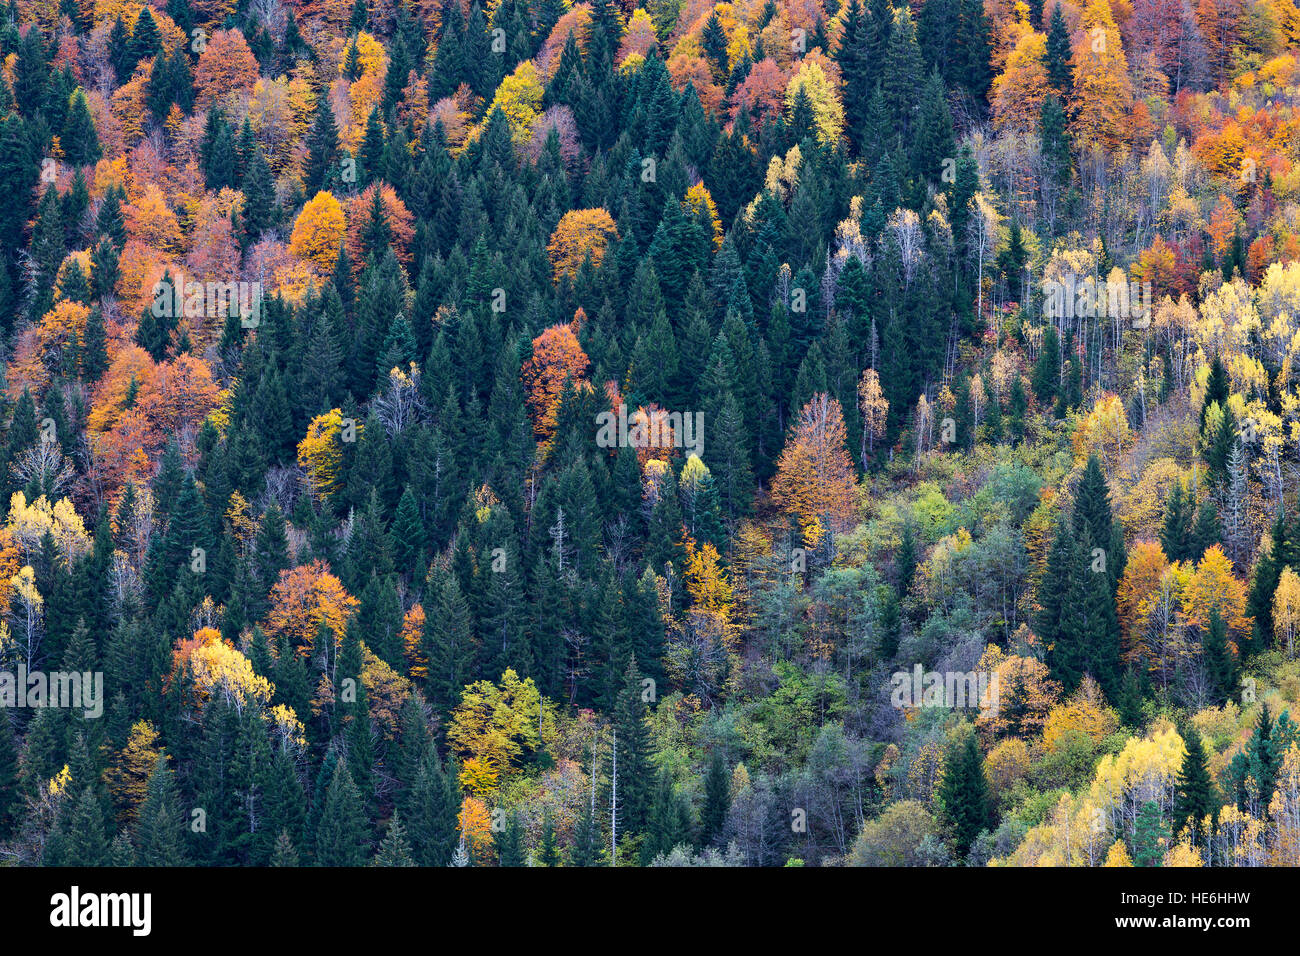 Autumn colors in the Caucasus Mountains, Georgia Stock Photo